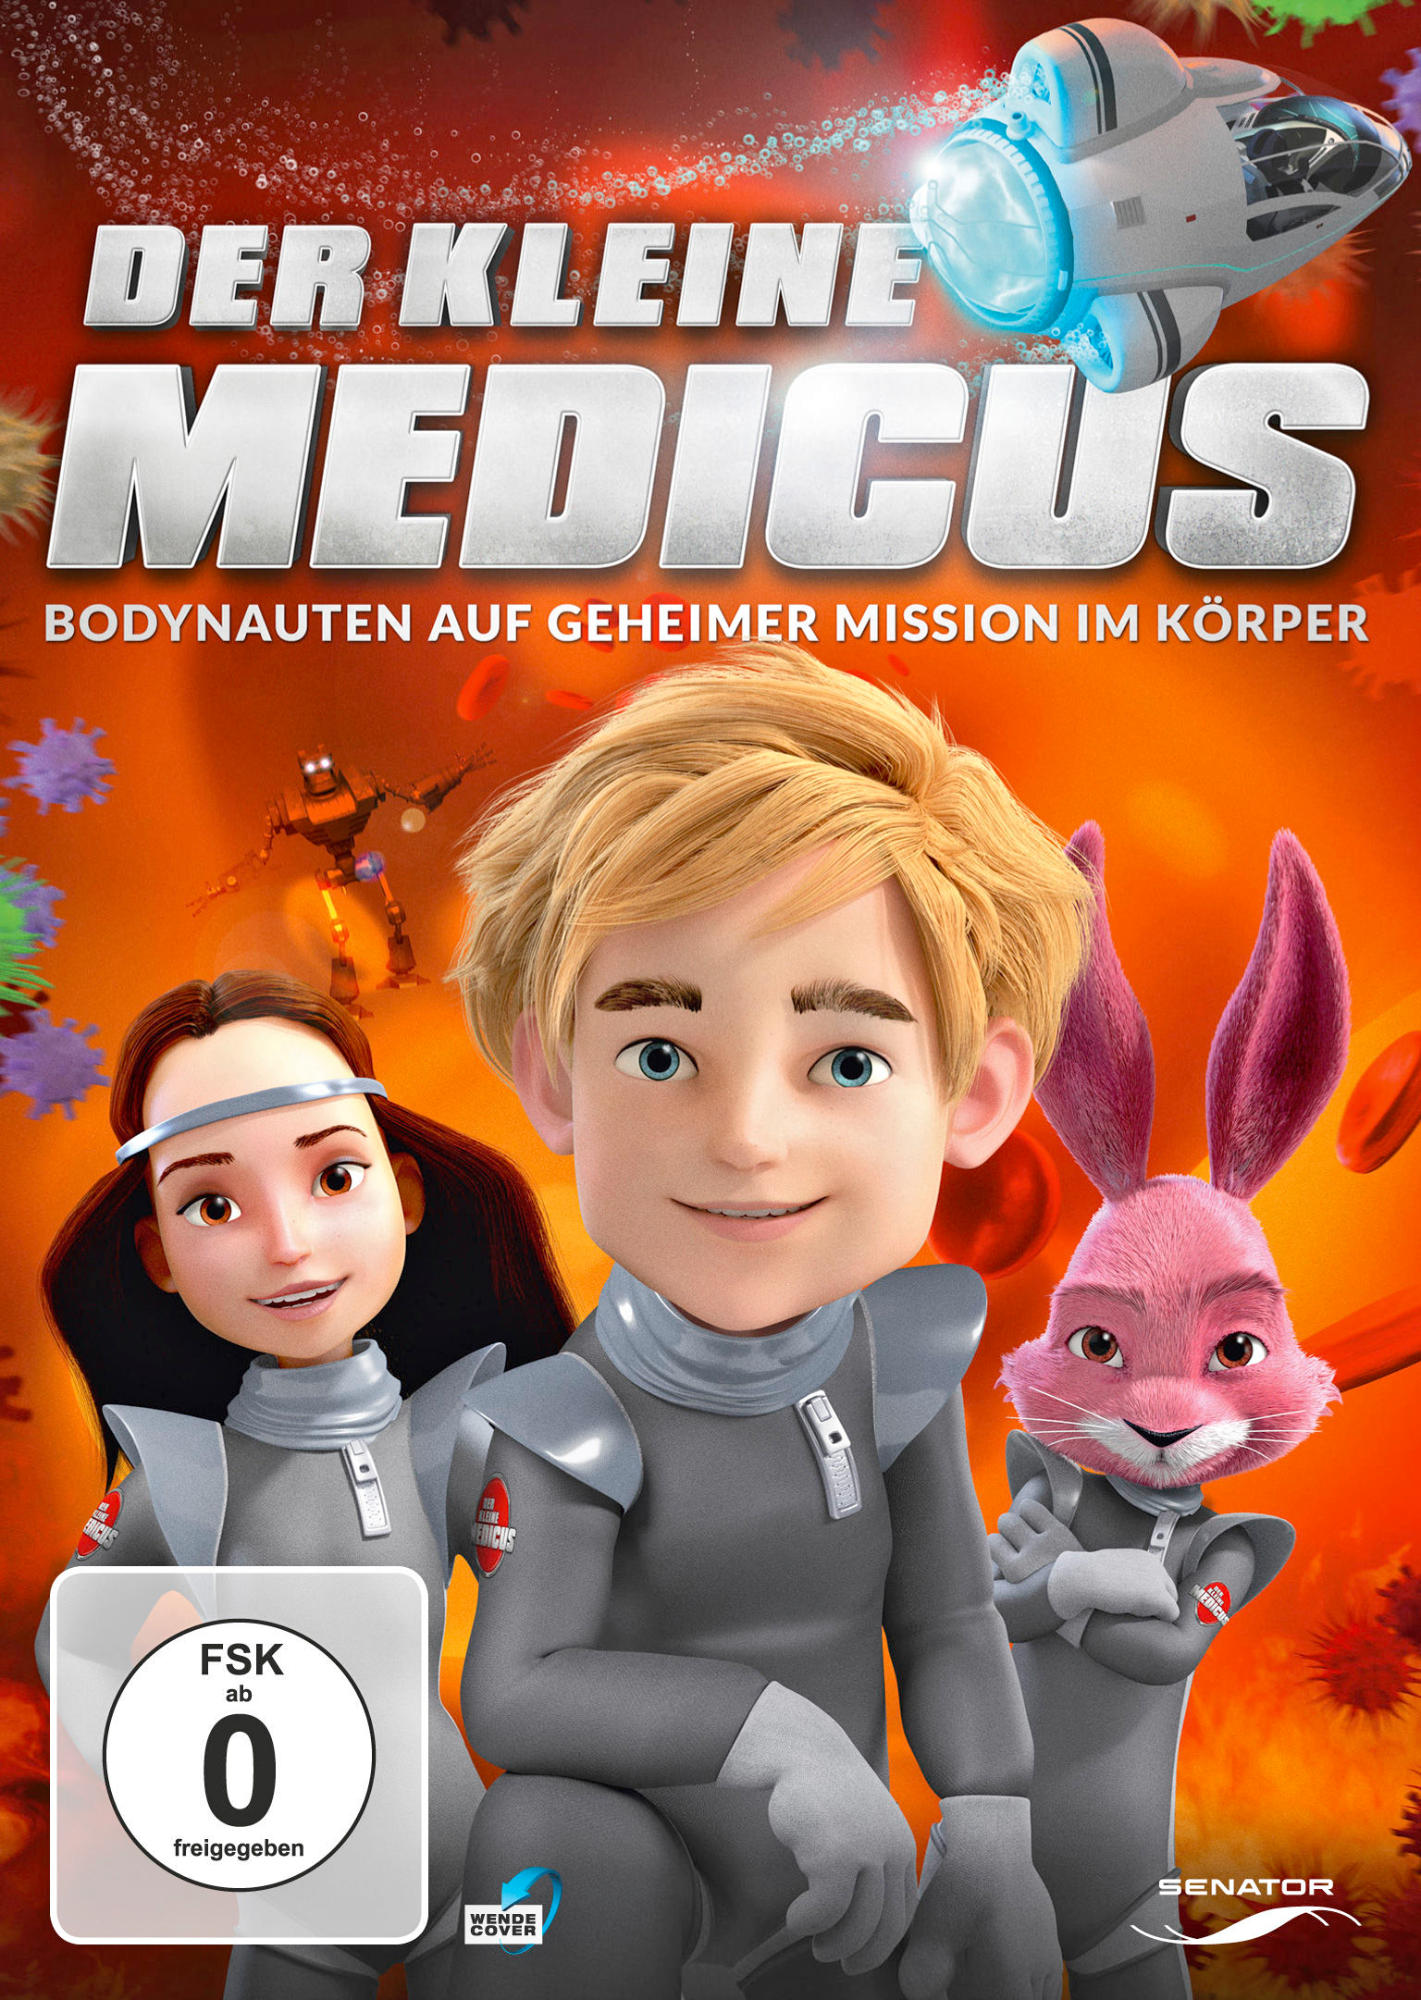 im - Der Geheimnisvolle DVD Kleine Mission Körper Medicus